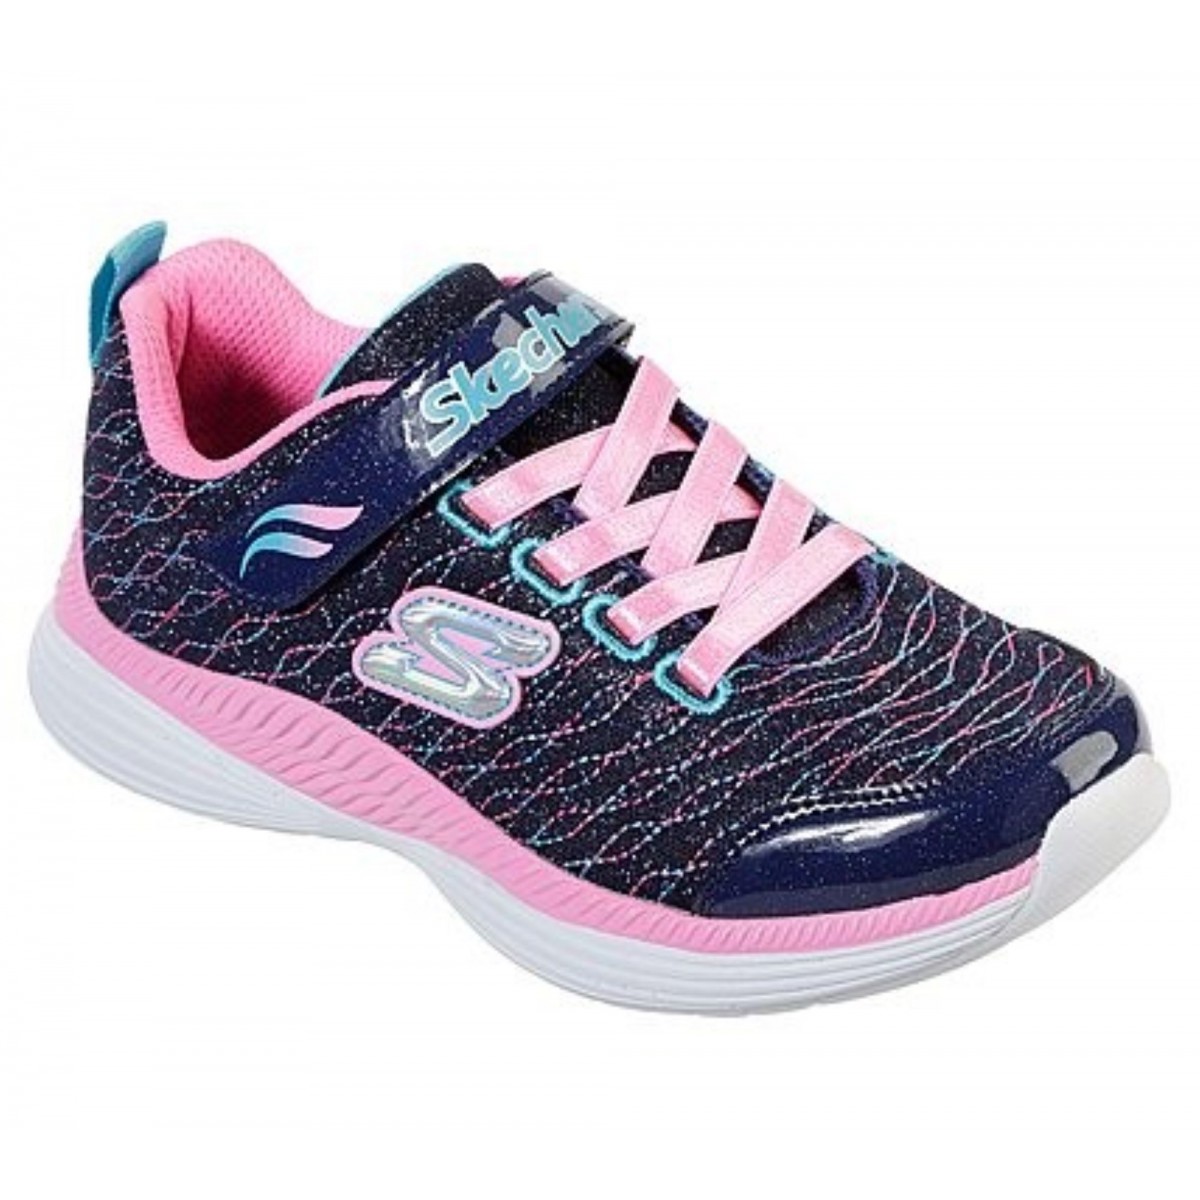 Skechers deportiva niña azul y rosa 83017l